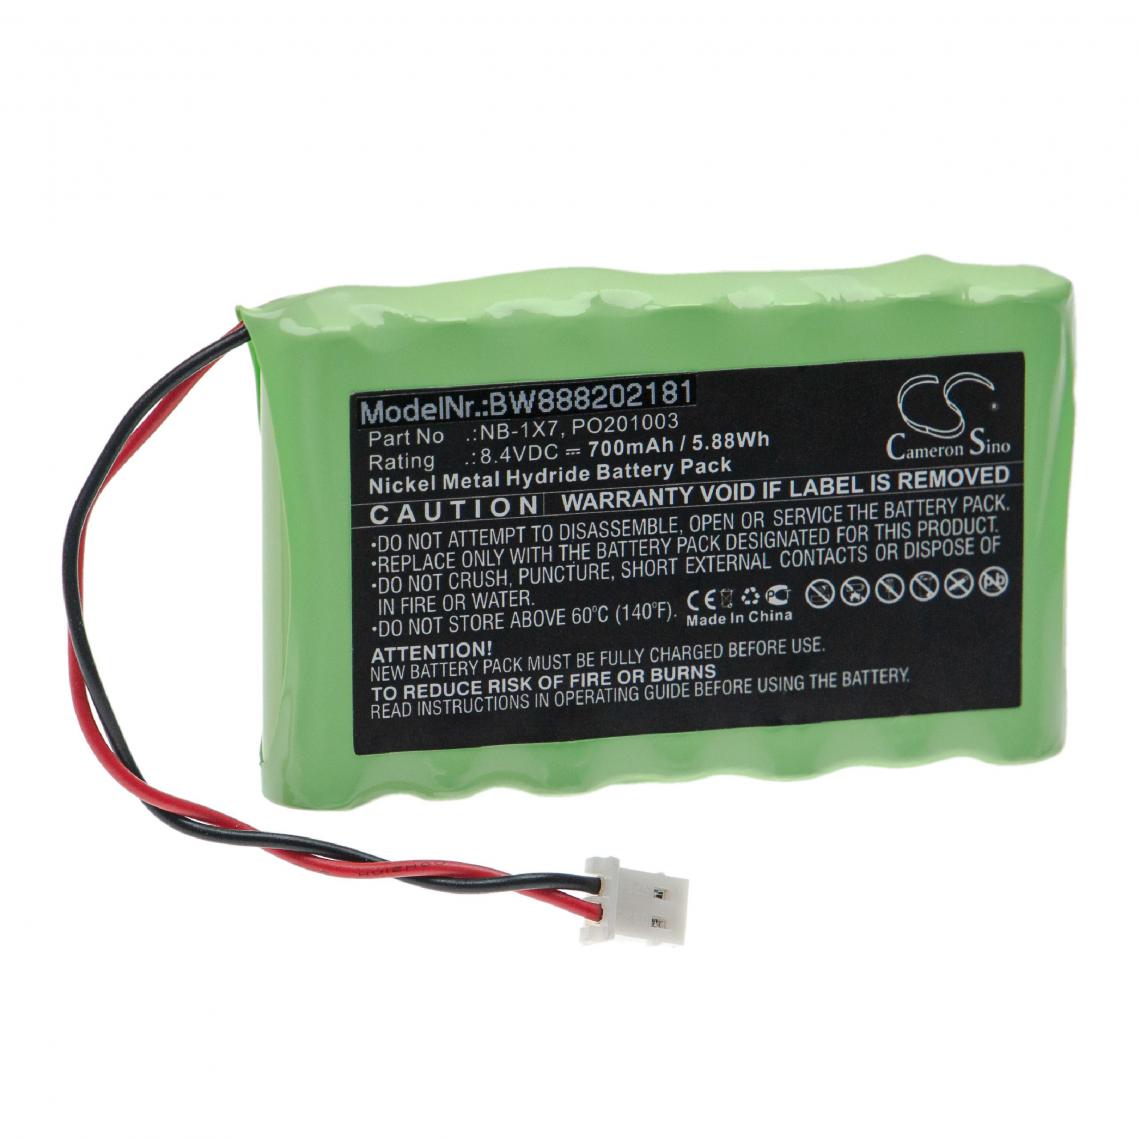 Vhbw - vhbw Batterie remplacement pour Acutrac NB-1X7, PO201003 pour outil de mesure (700mAh, 8,4V, NiMH) - Piles rechargeables